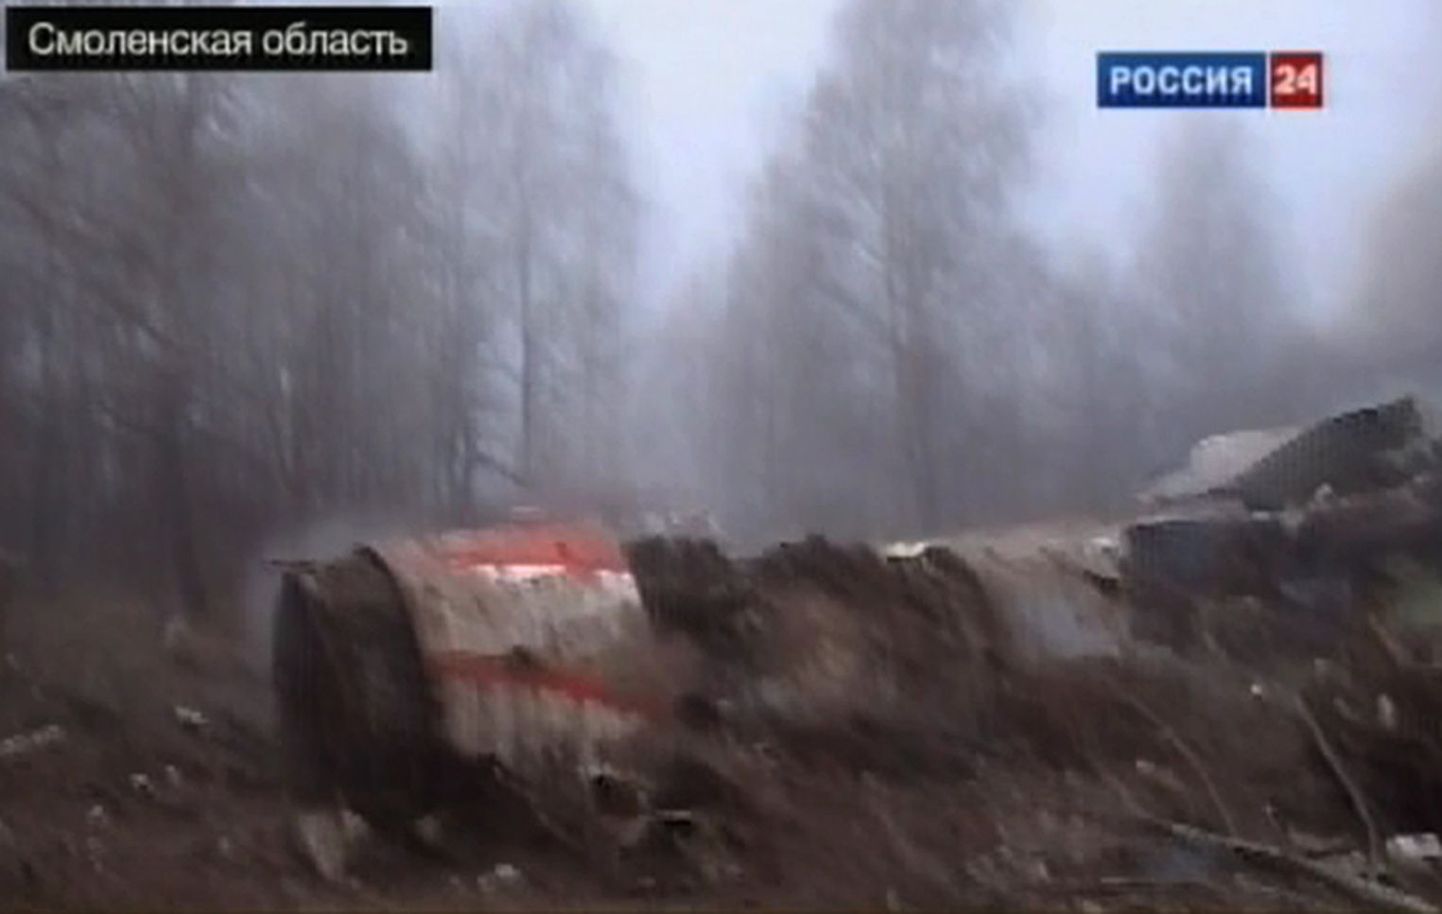 Rossija-24 telekanali kaader Smolenski lähedal alla kukkunud Poola presidendi lennuki Tu-154 rusudest.